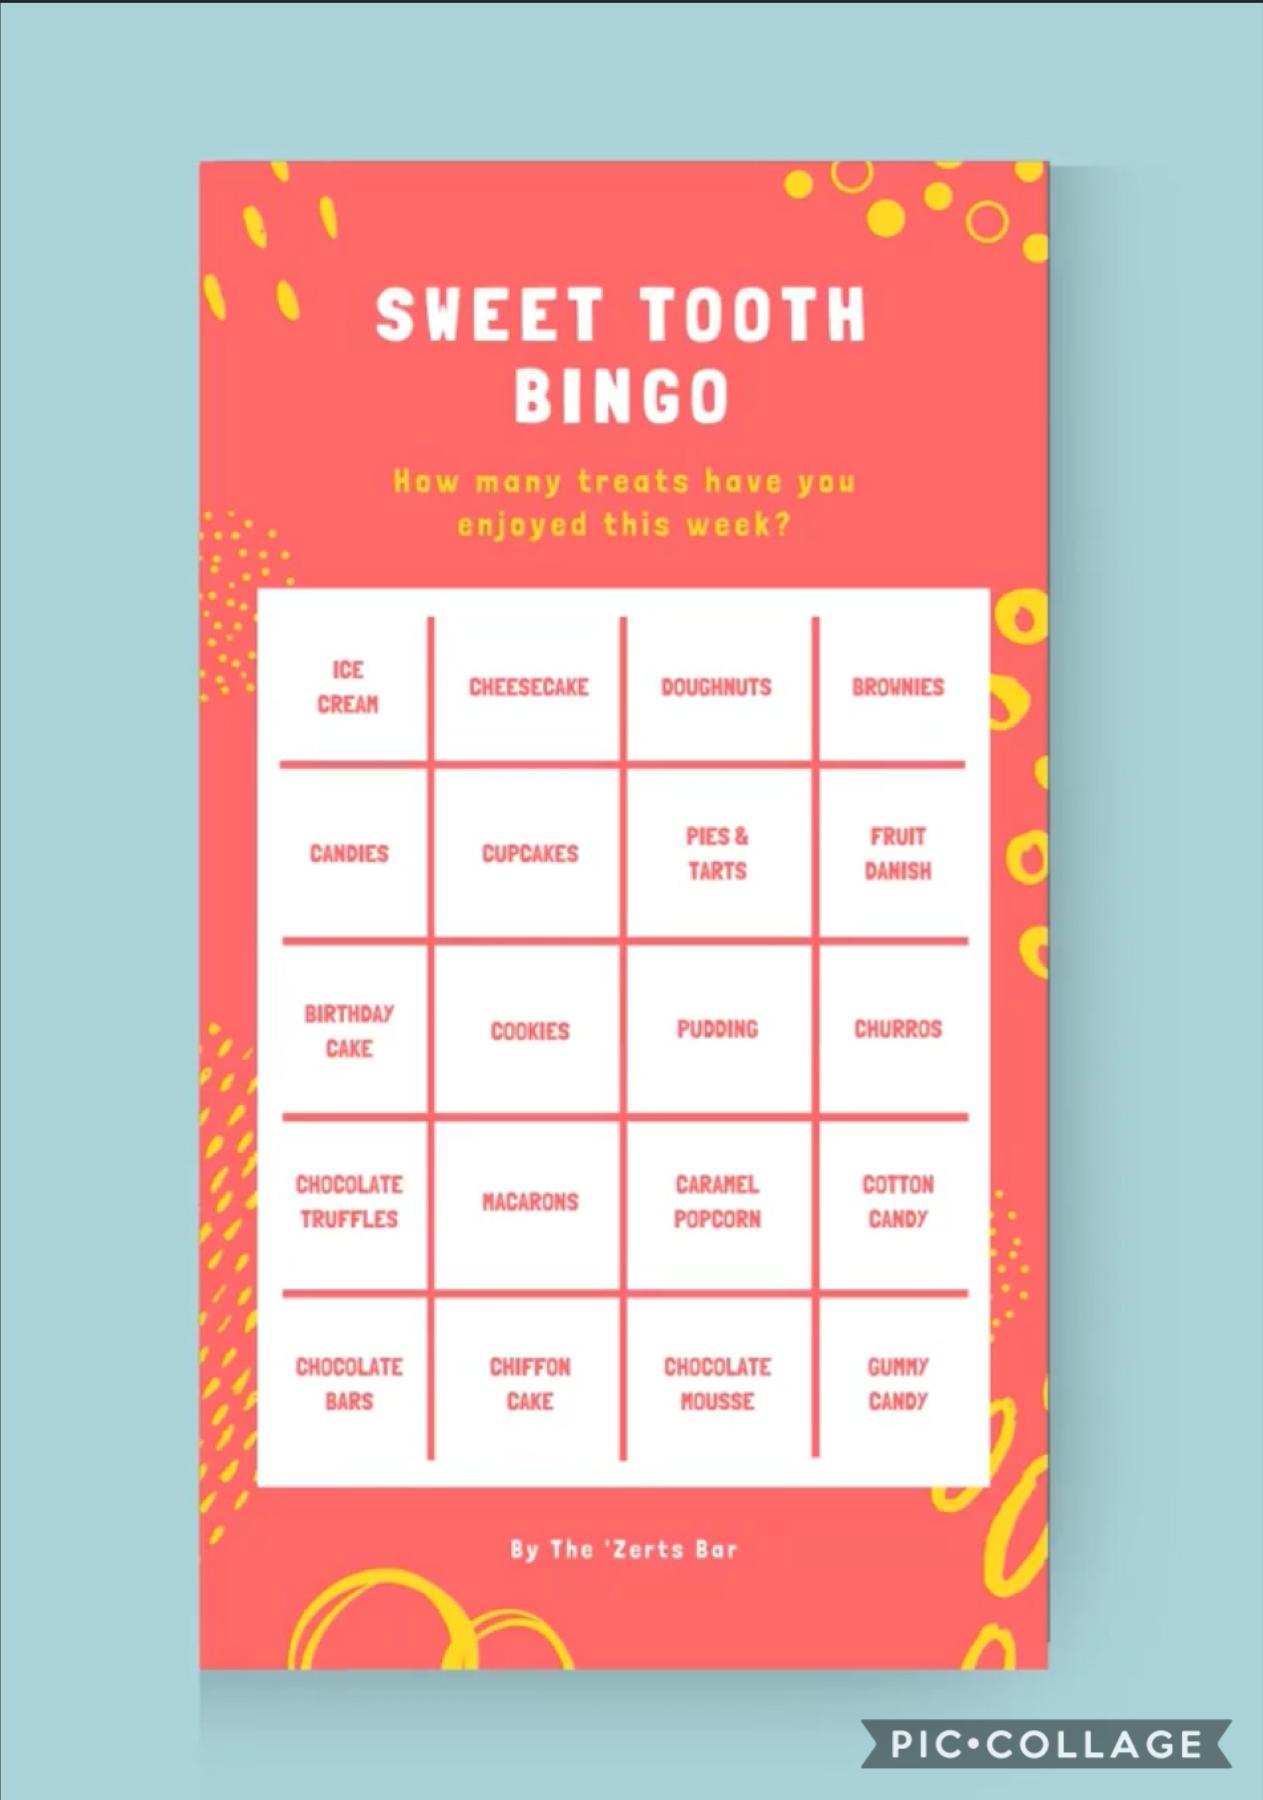 Sweet tooth bingo